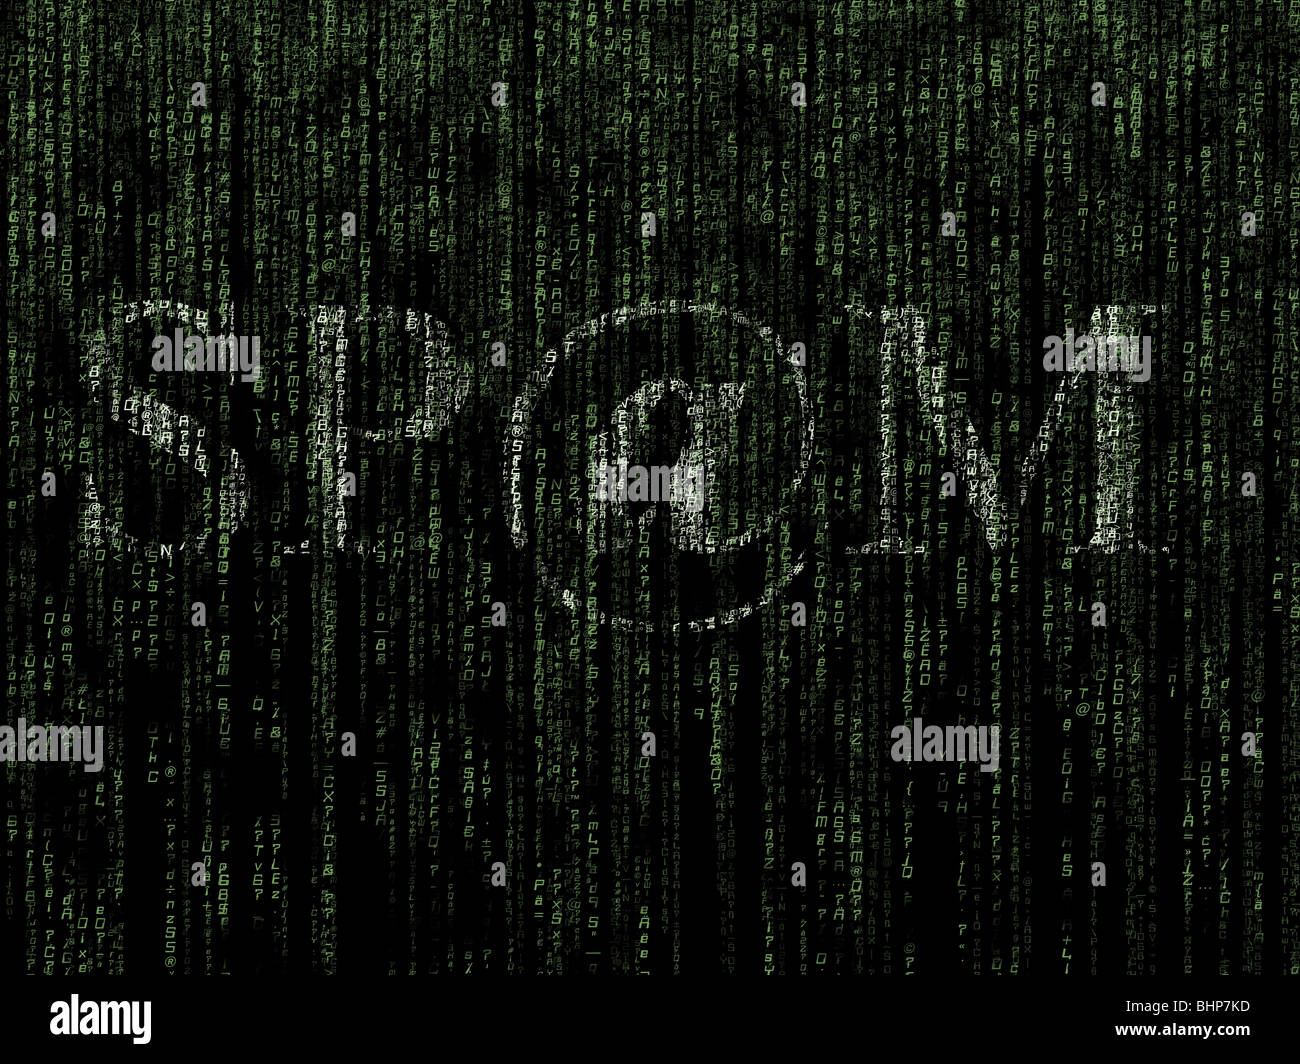 Spam-Wort überlagert Computer generiert matrixartige Hintergrund Stockfoto